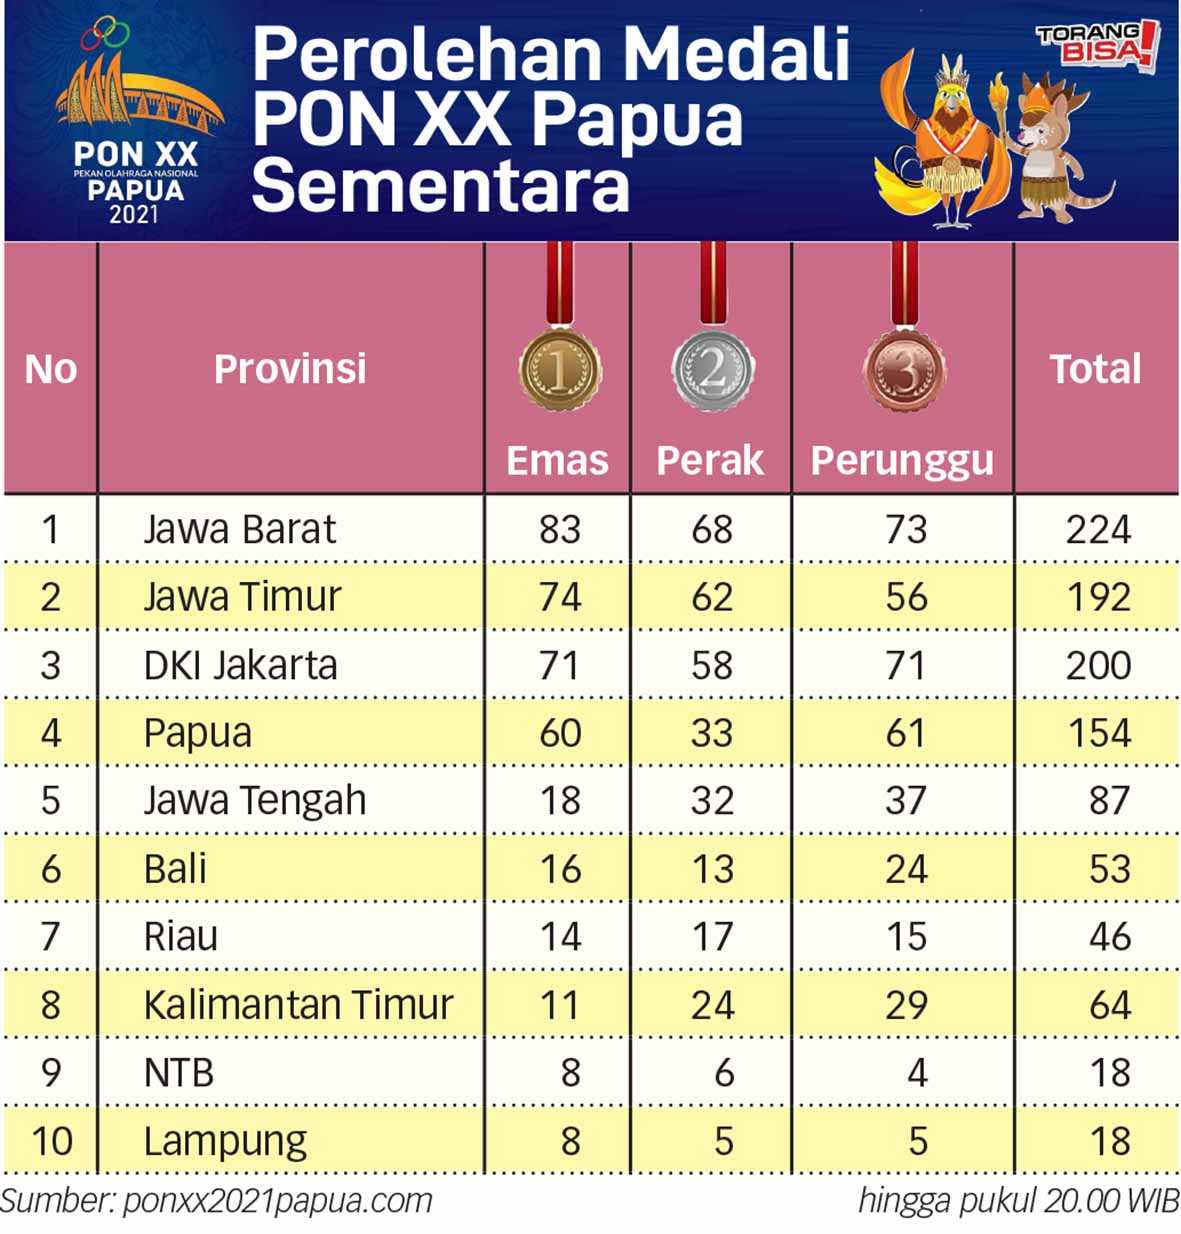 Perolehan Sementara Medali PON XX Papua